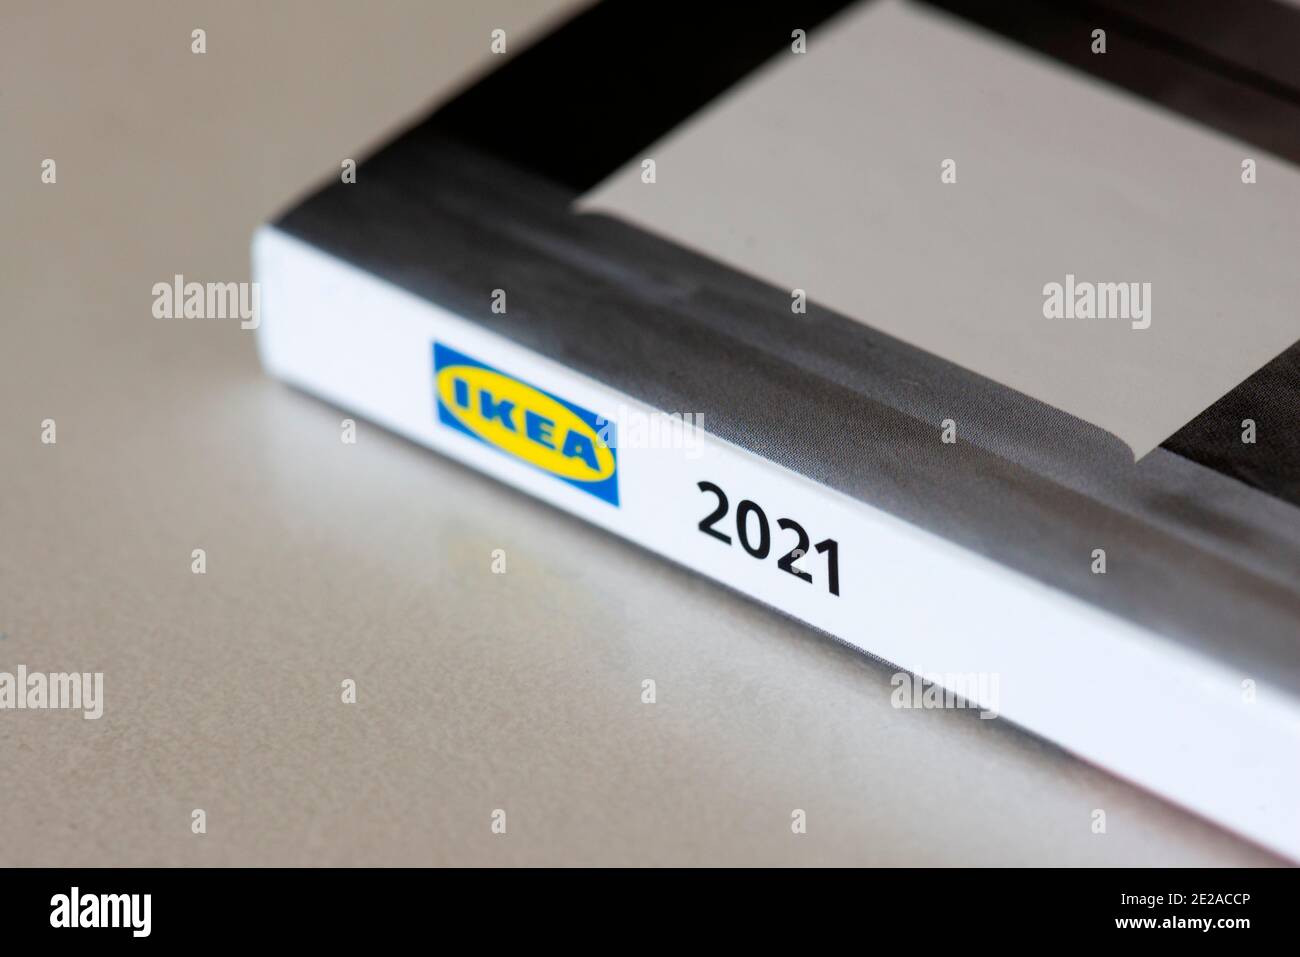 IKEA 2021 nueva edición del catálogo de papel como la última publicación Versión impresa por el minorista sueco de muebles y hogares Foto de stock